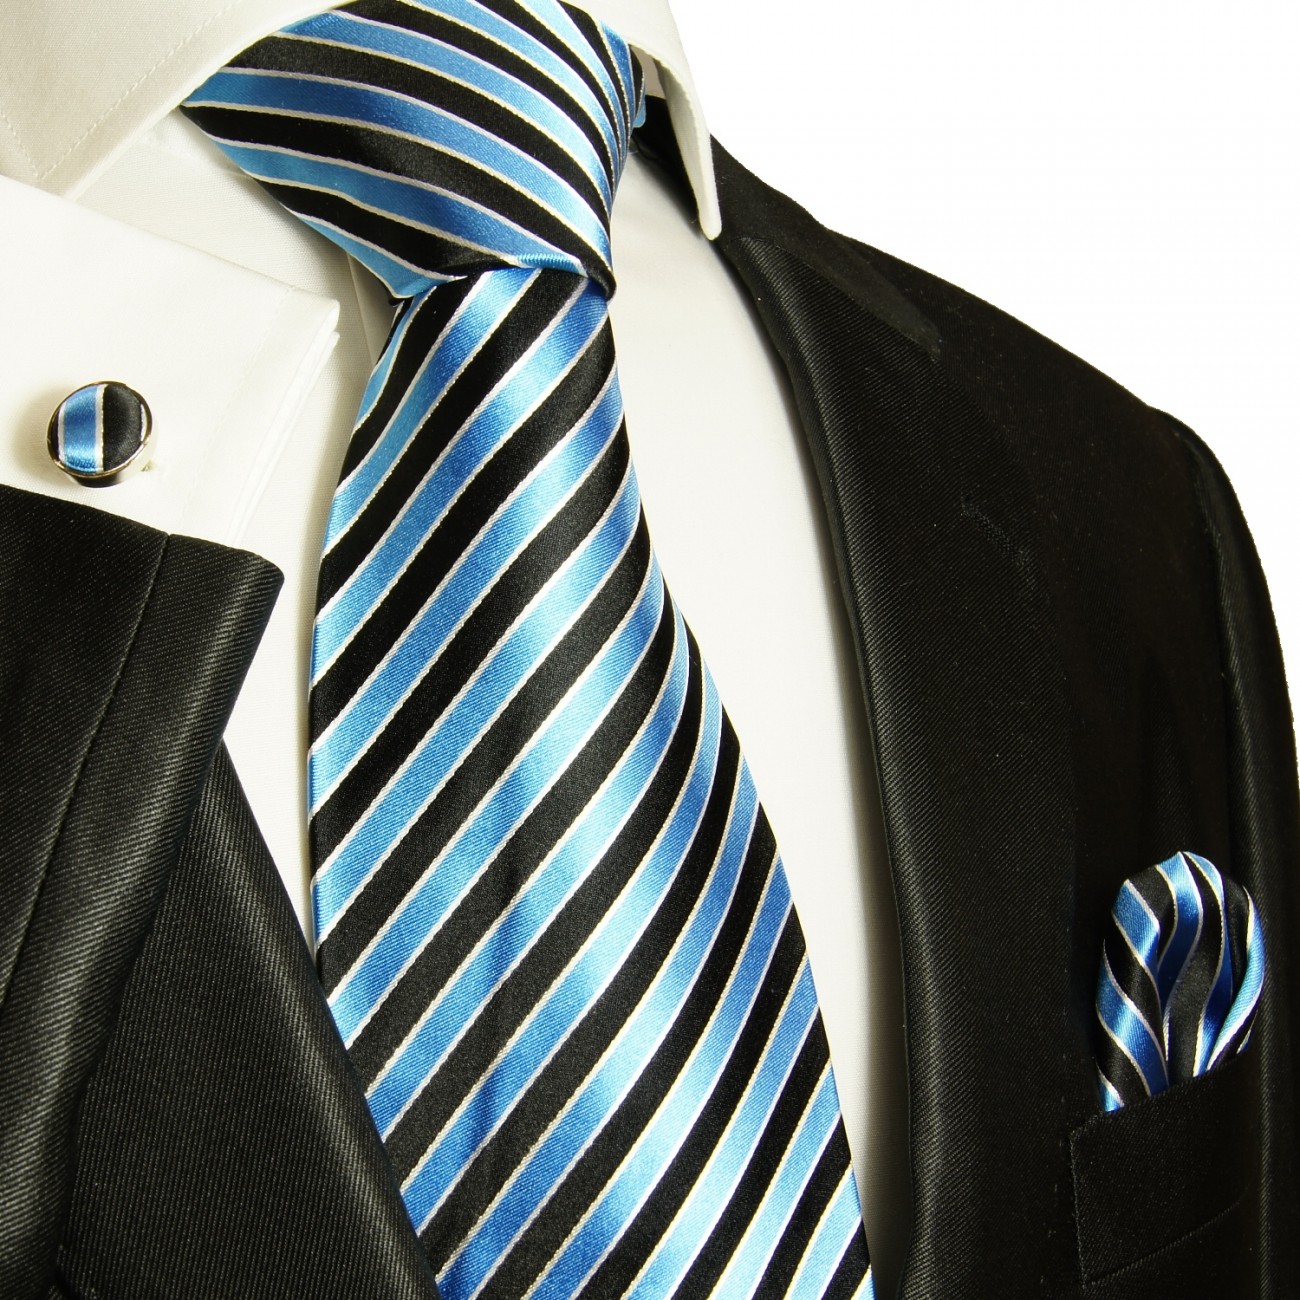 blue mens tie striped necktie - silk tie and pocket square and cufflinks